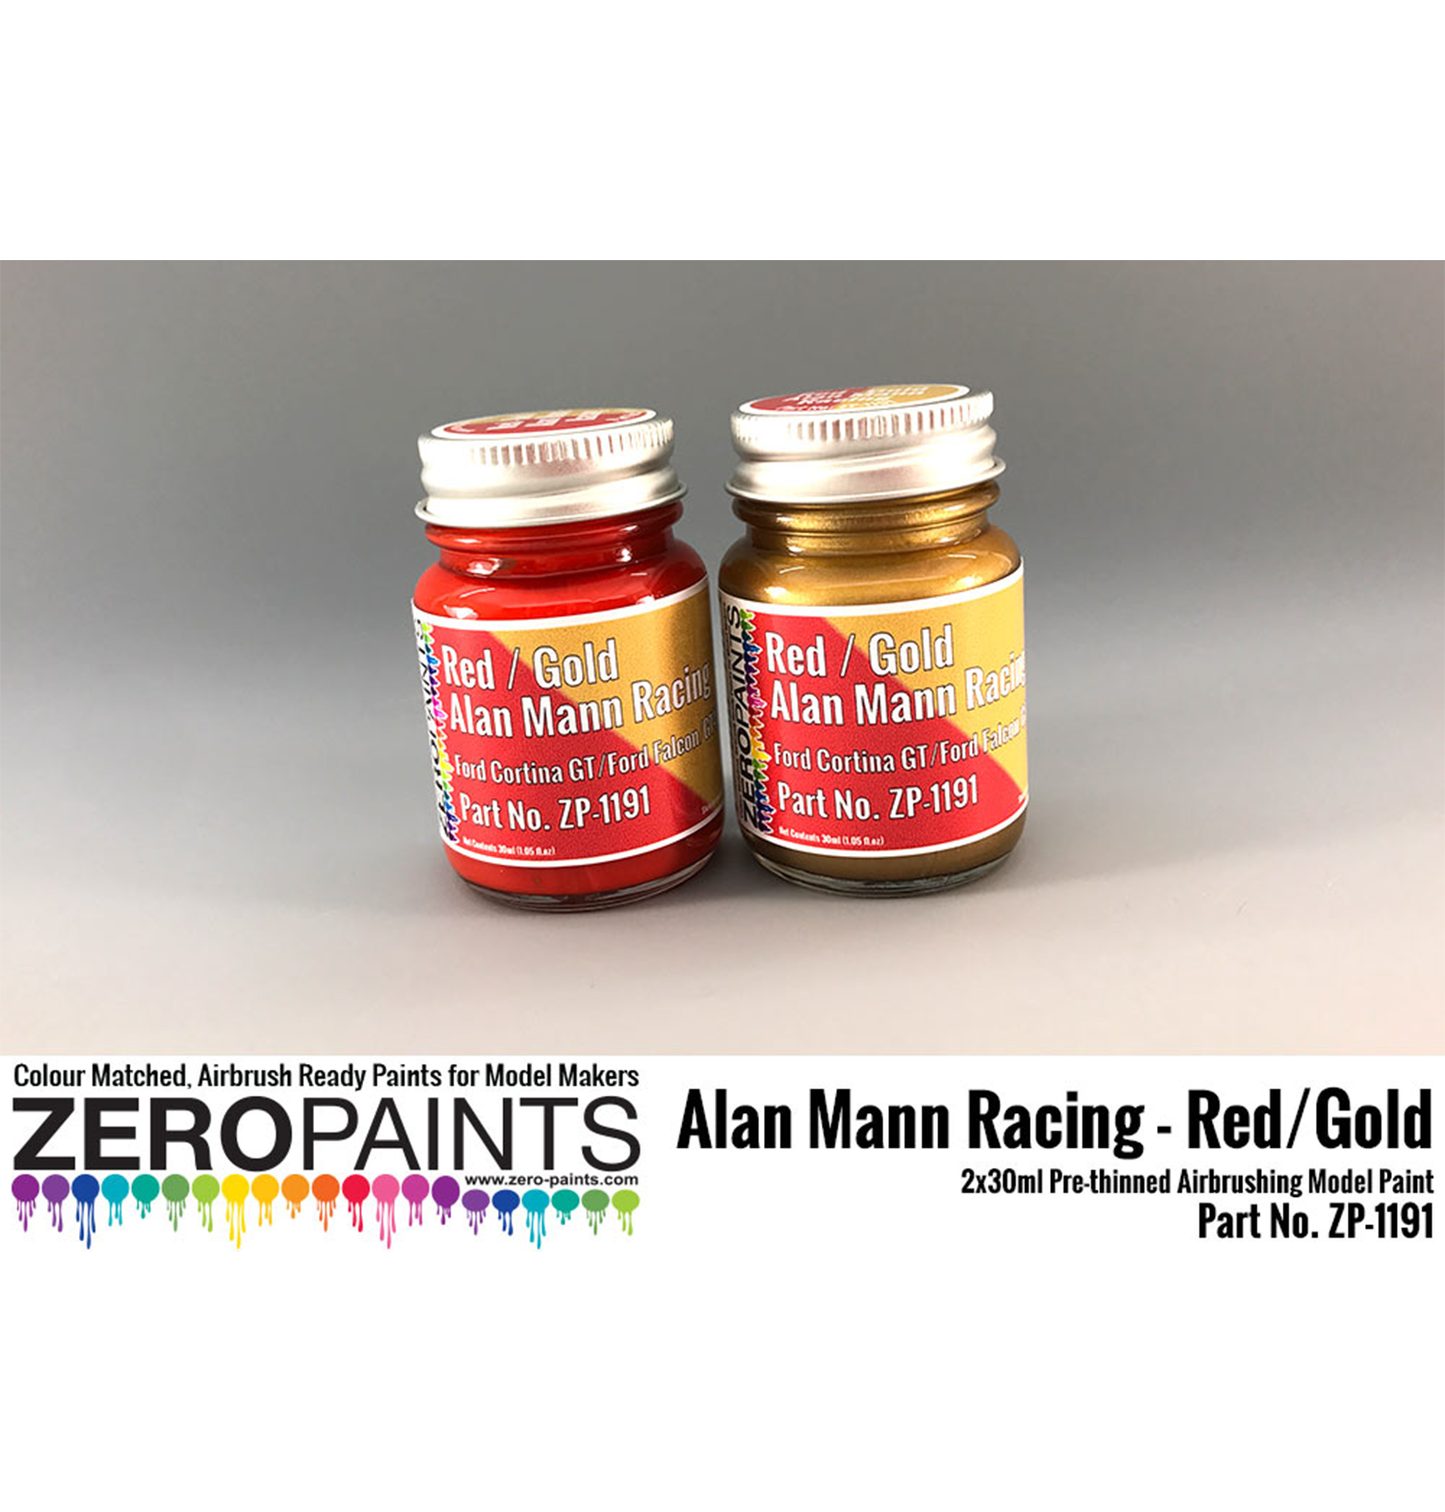 Zeropaints ZP-1191 "Alan Mann Racing Red/Gold"